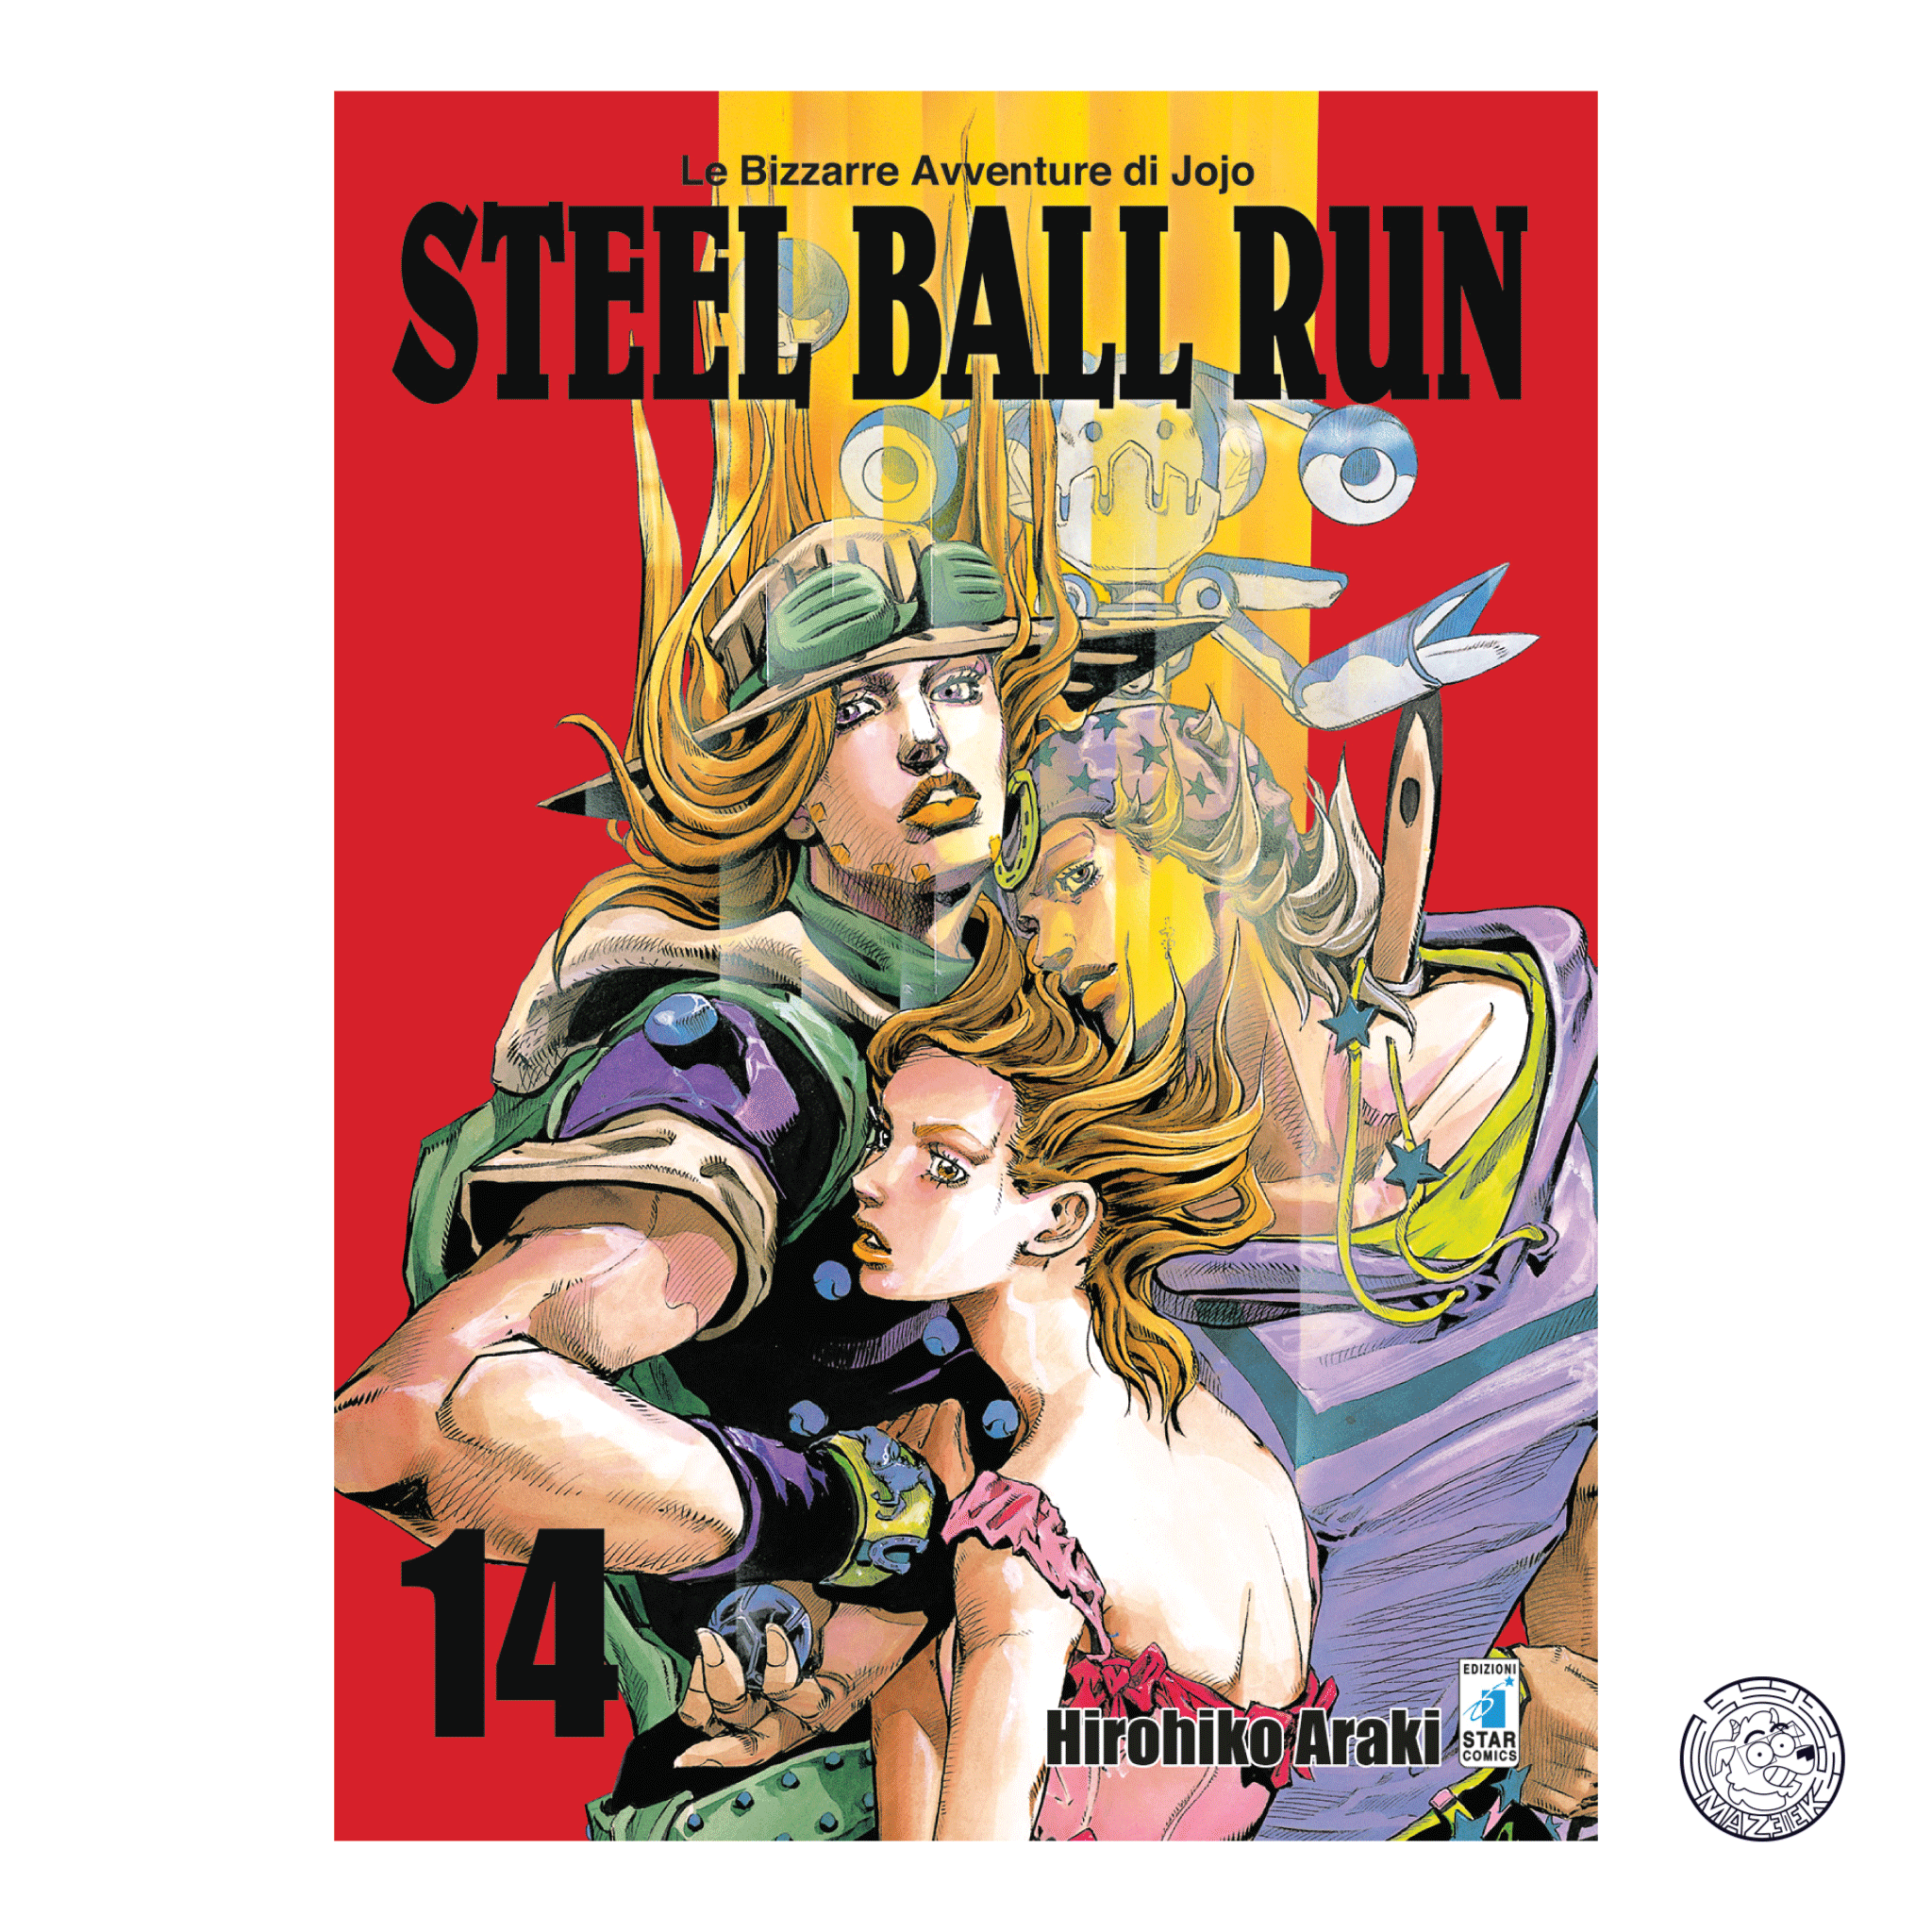 Le Bizzarre Avventure di JoJo: Steel Ball Run 14